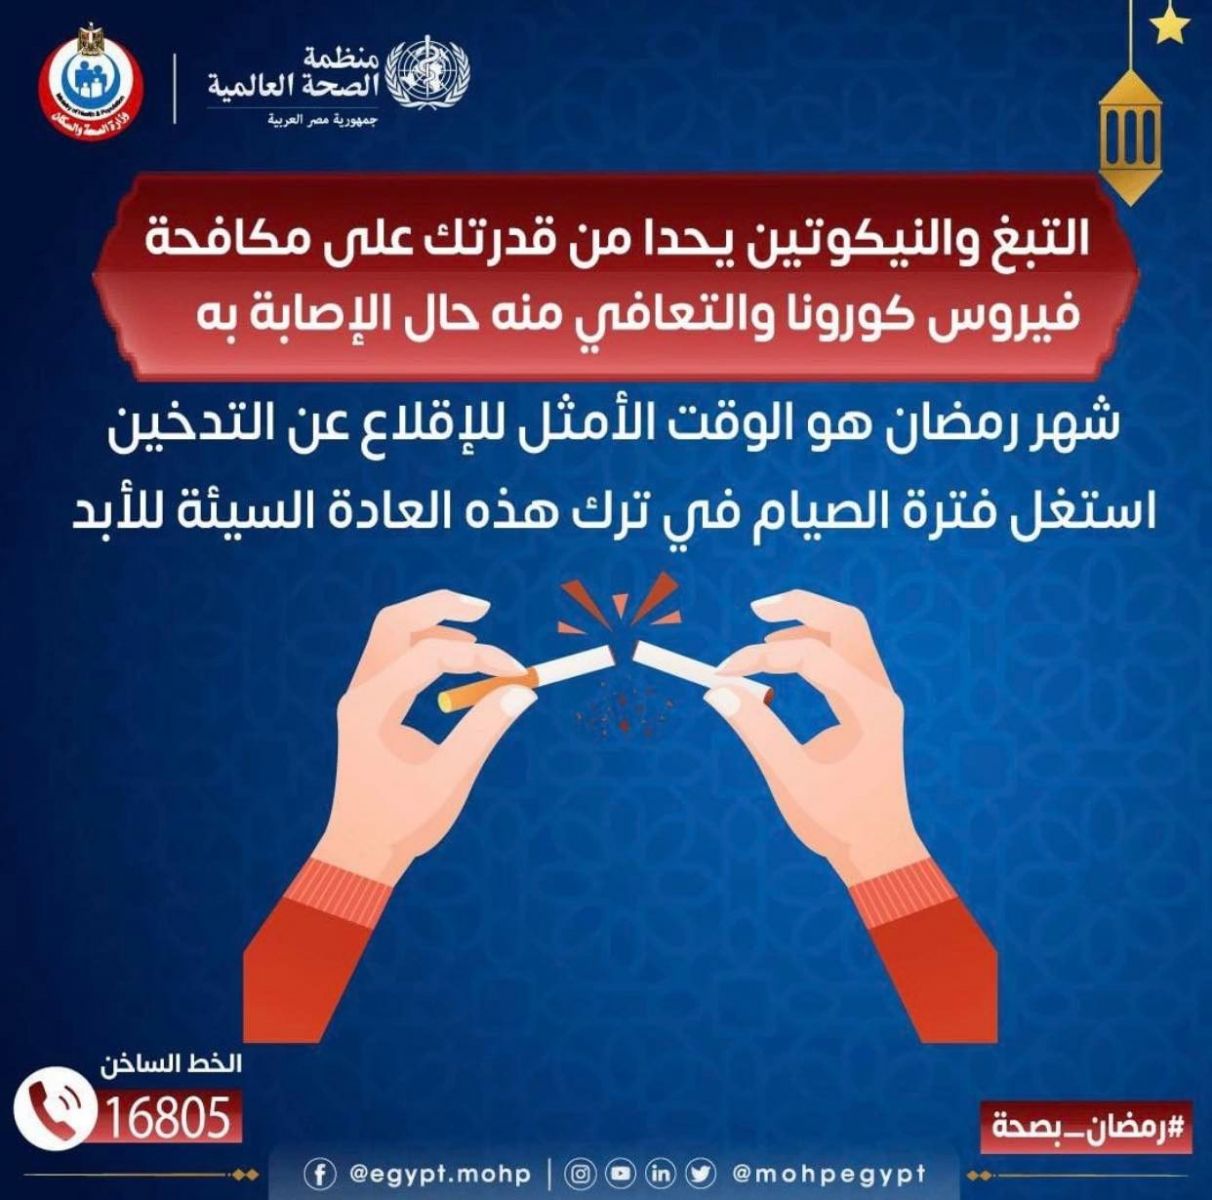 وزارة الصحة تساعد المدخنين في الإقلاع عن التدخين في رمضان